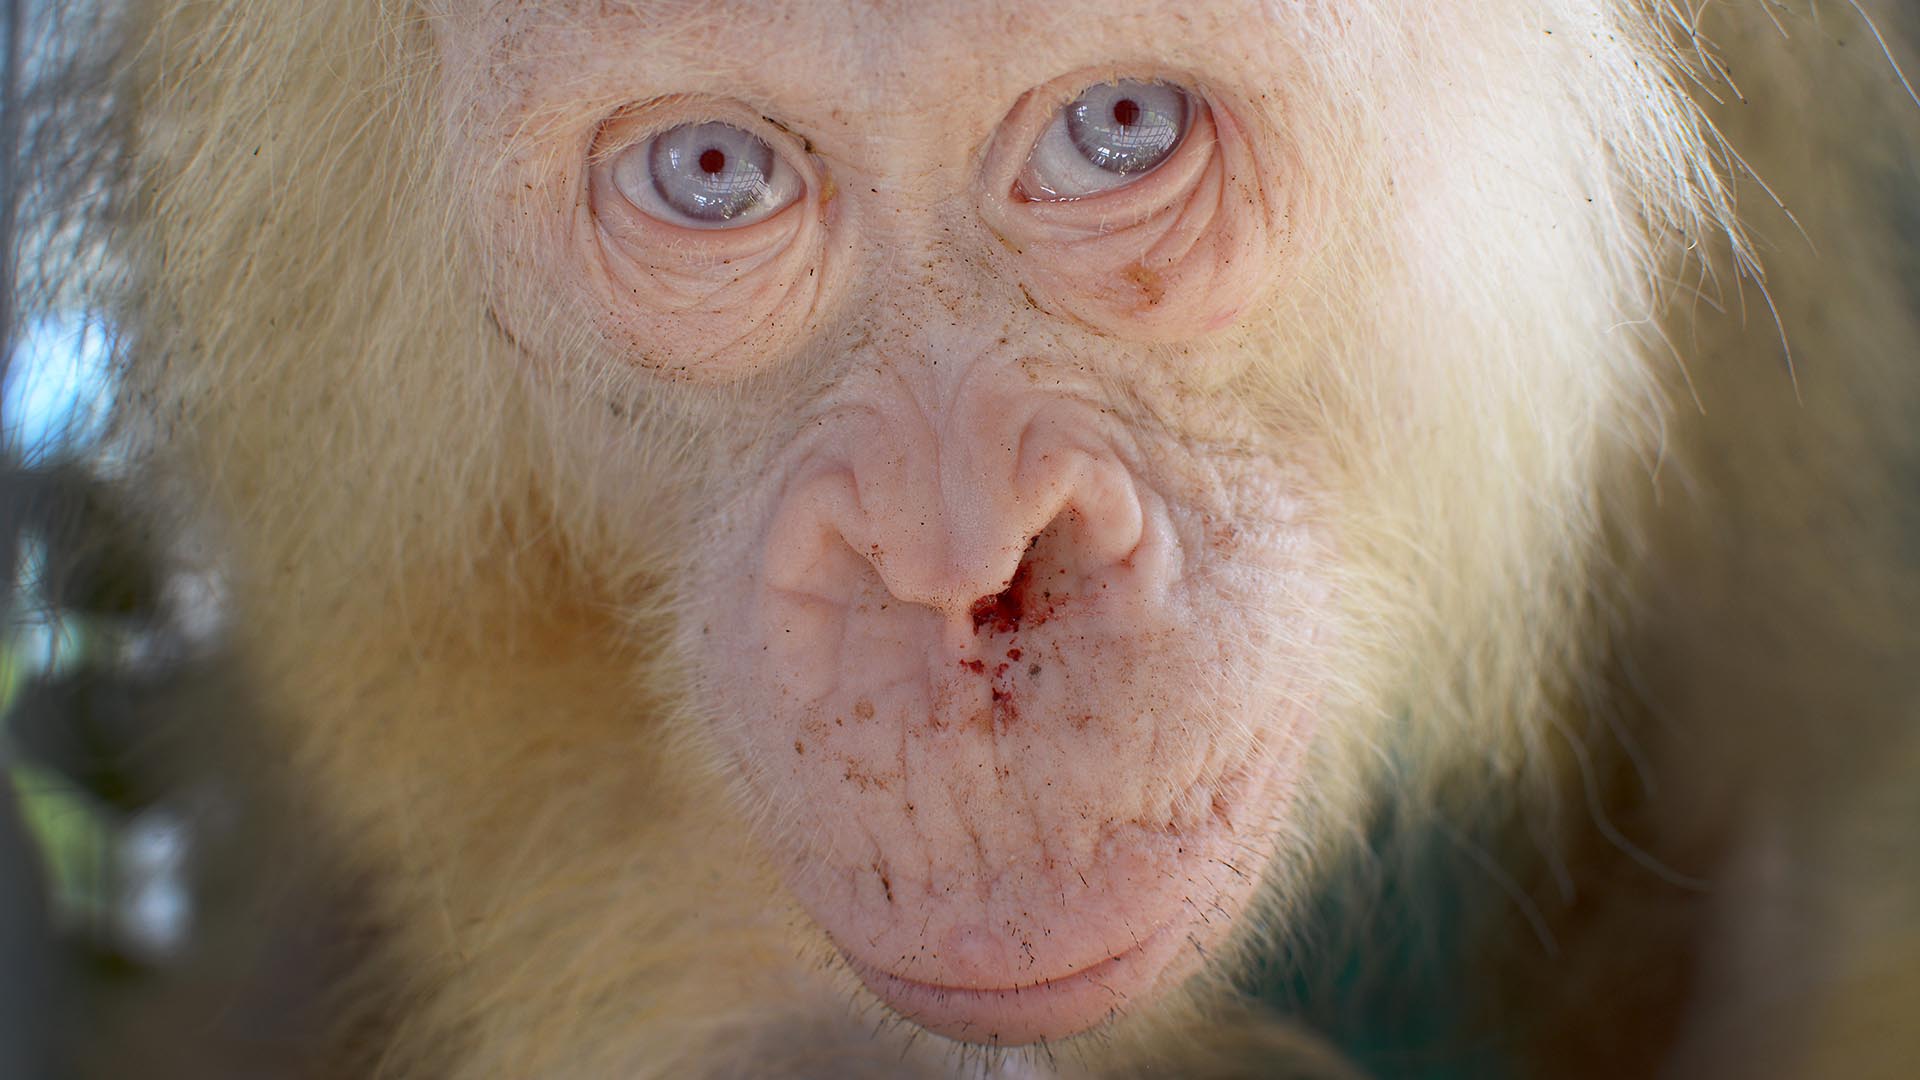 Una orangutana albina de ojos azules es rescatada en Borneo